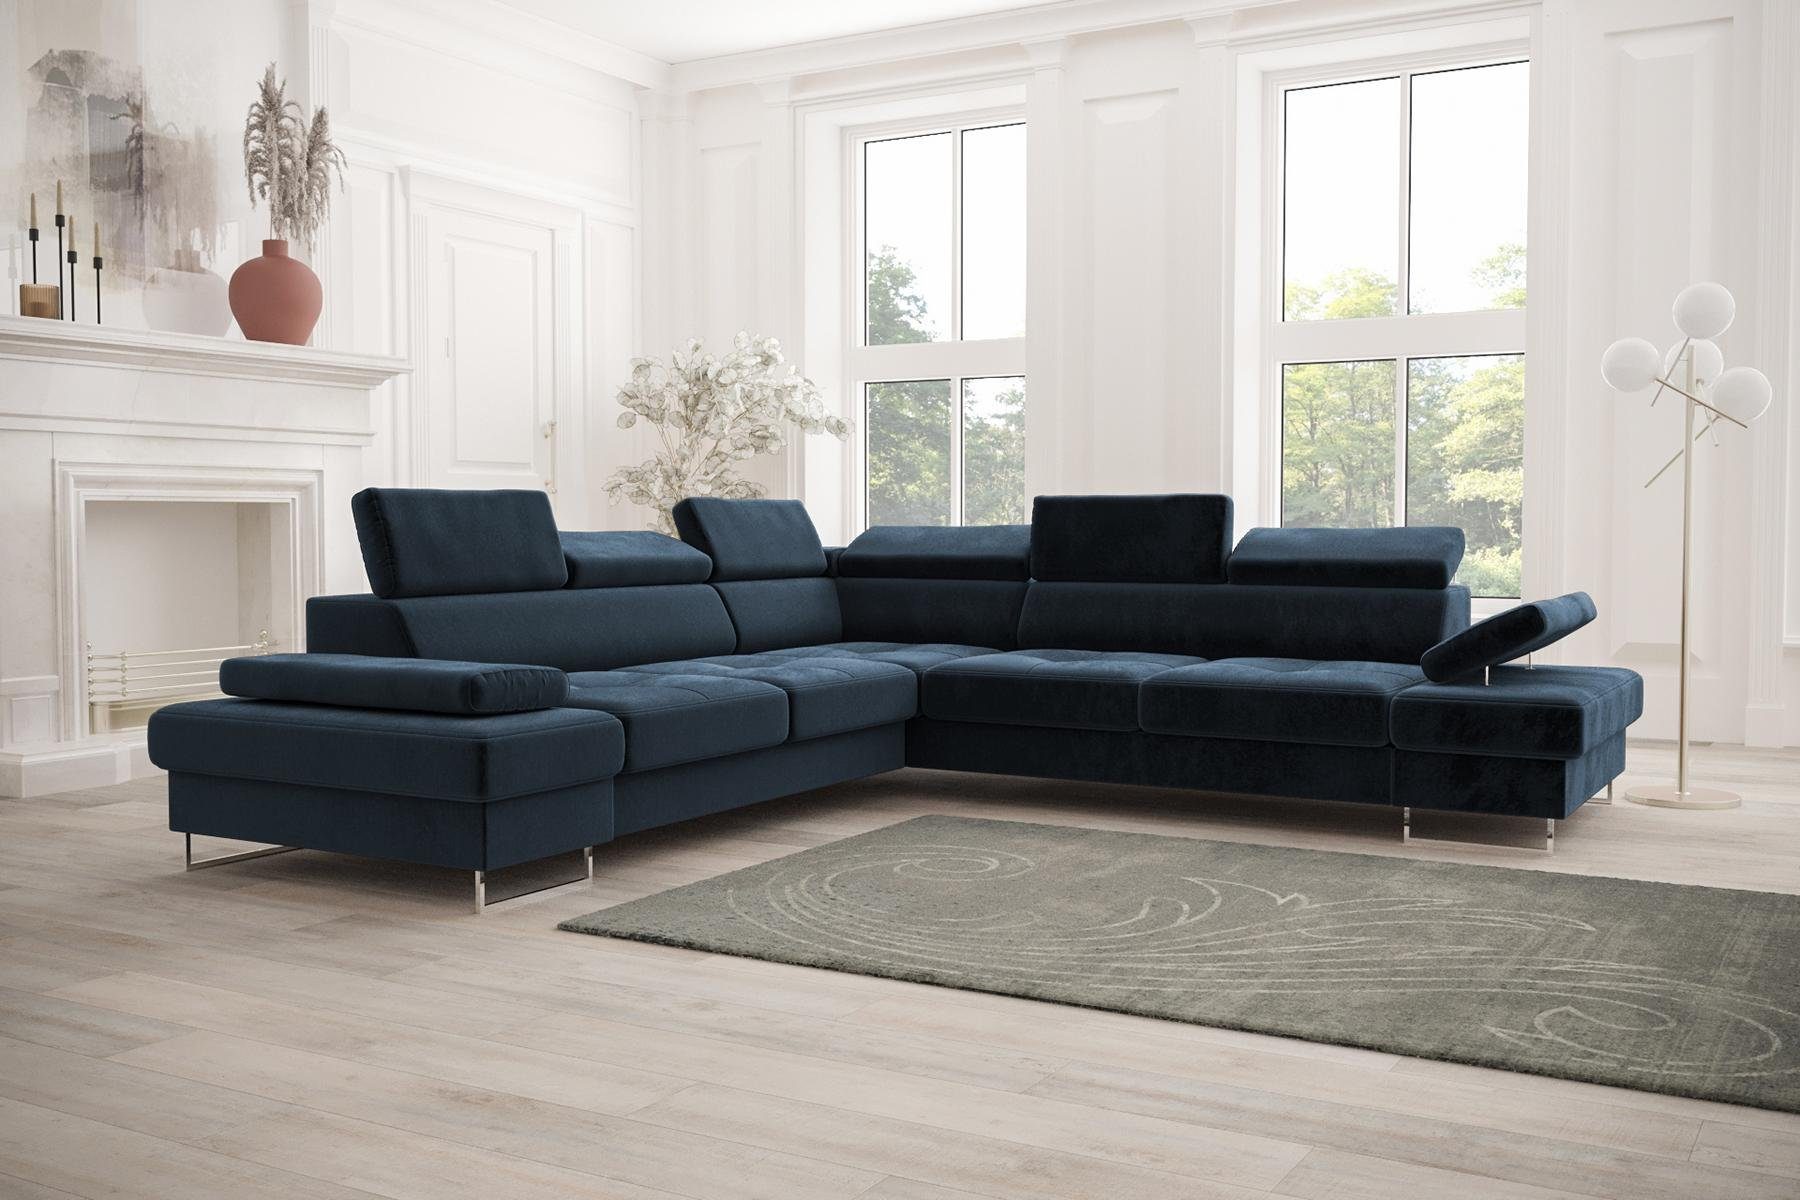 JVmoebel Ecksofa Sofa Couch Polsterung L-Form Wohnzimmer Design, Made in Europe Blau